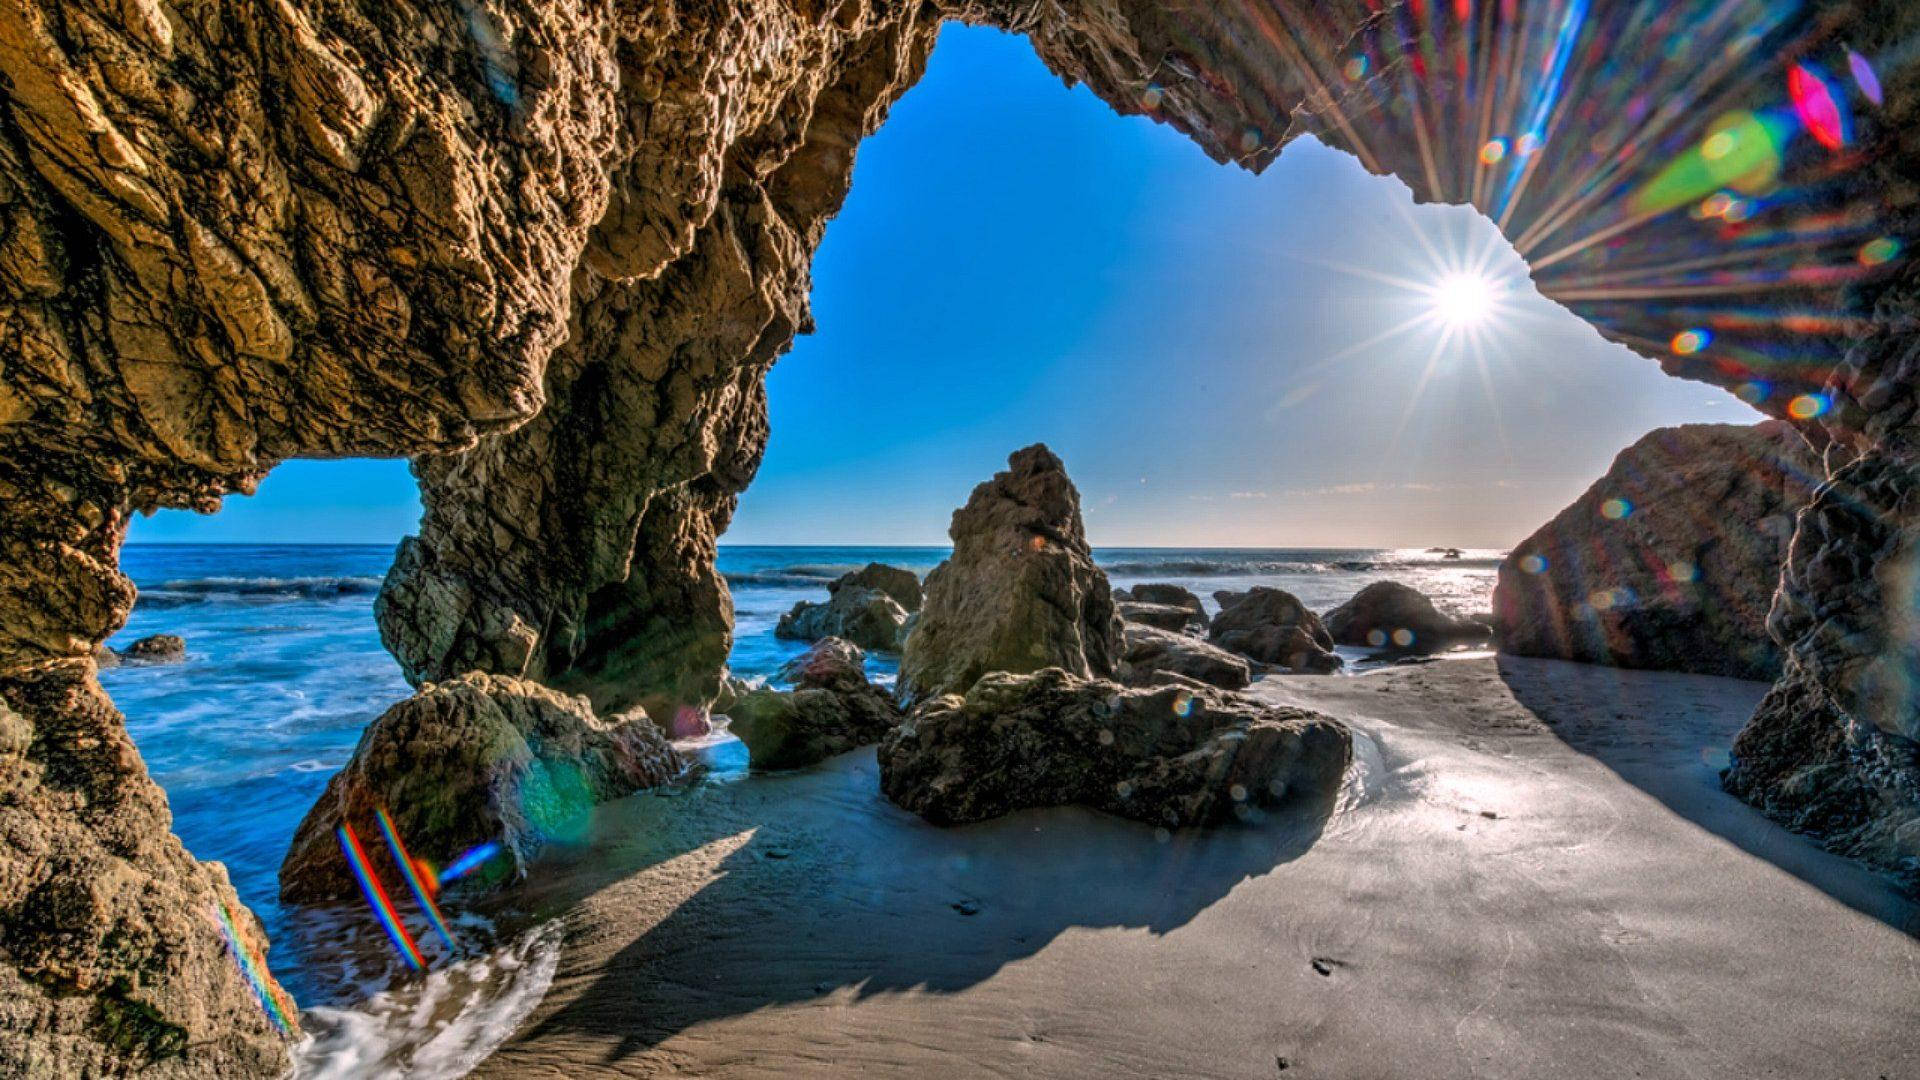 Elmatador Malibu Beach Cave: El Matador Malibu Strandgrotta. Wallpaper